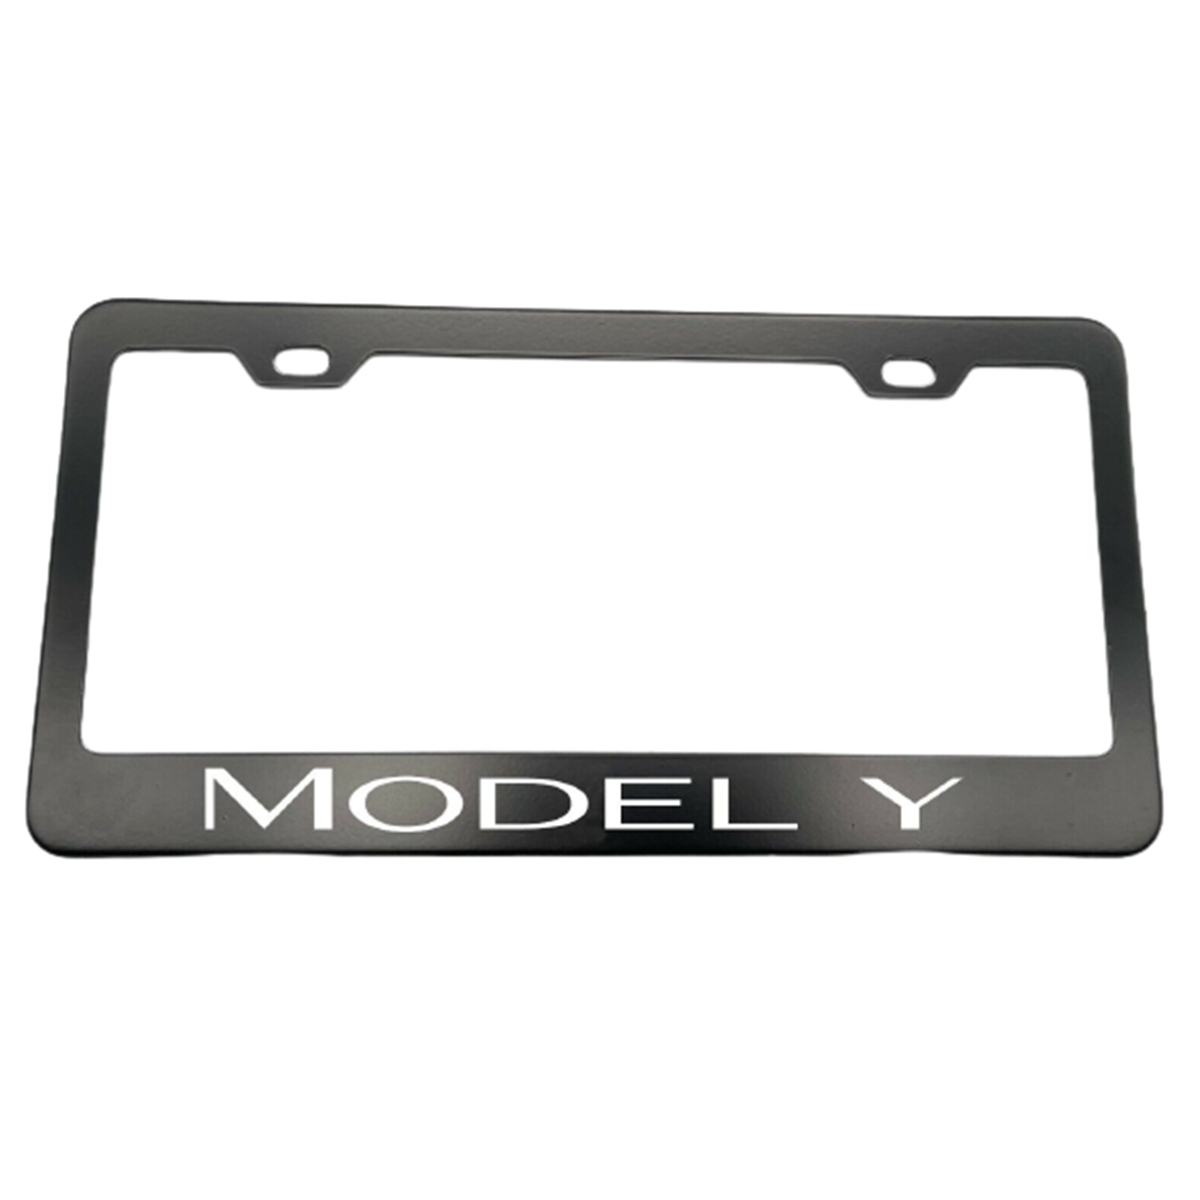 2pcs Front License Plate Frame for Tesla Model Y